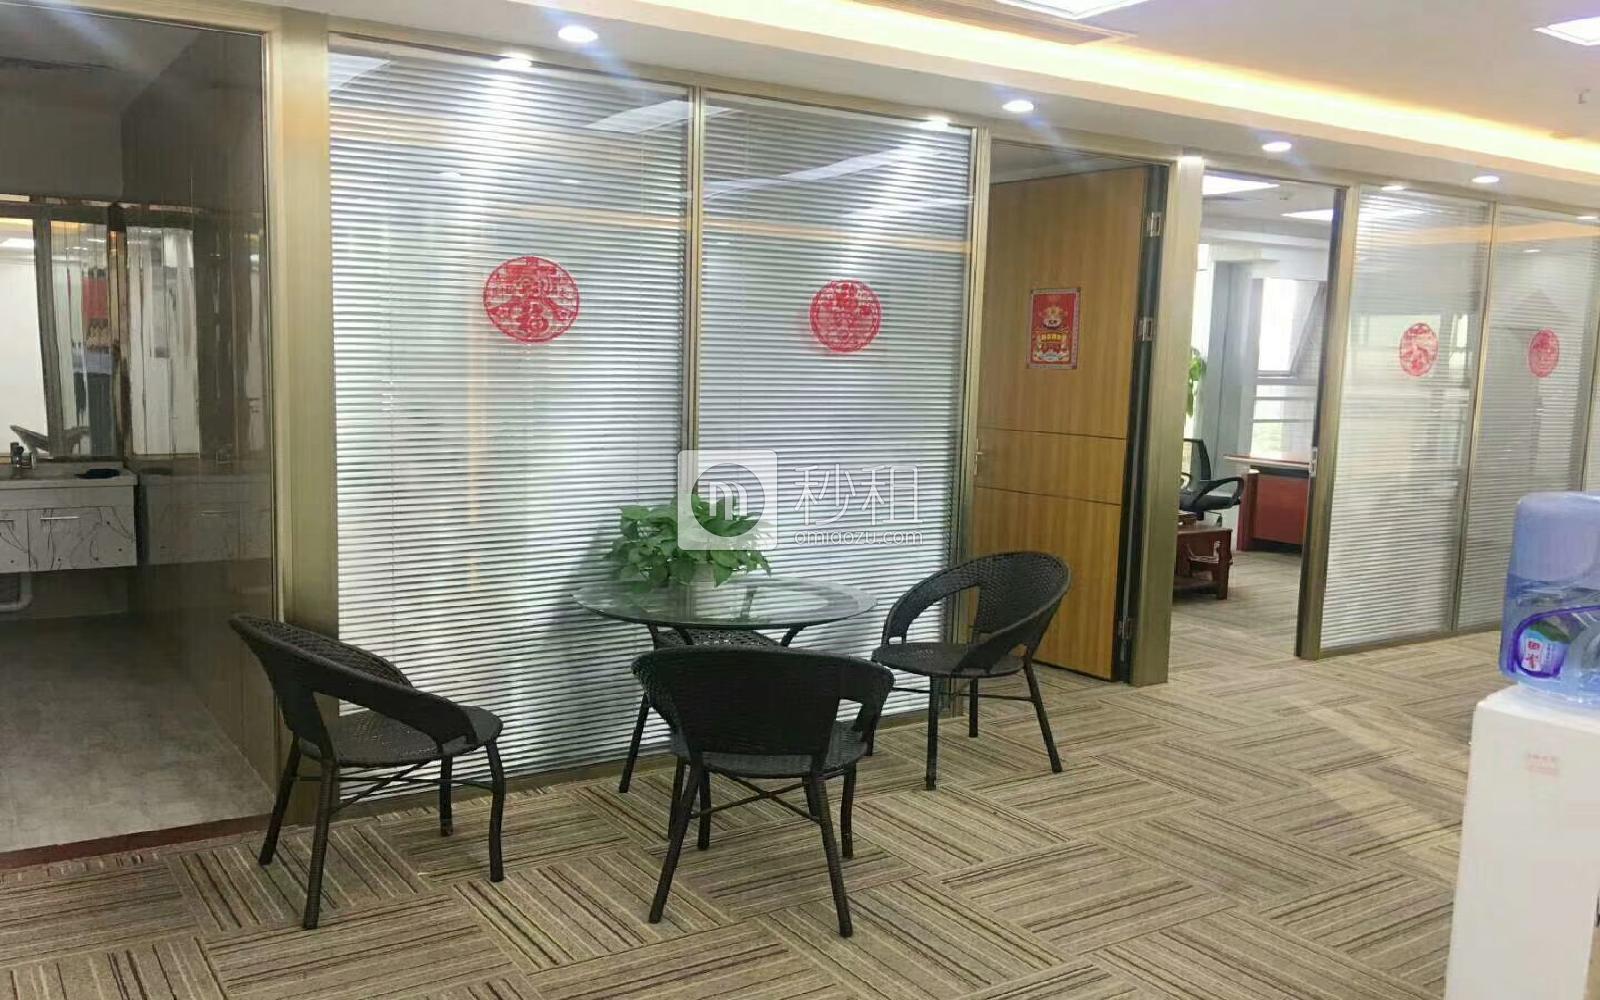 杭鋼富春大廈寫字樓出租172平米精裝辦公室98元/m2.月